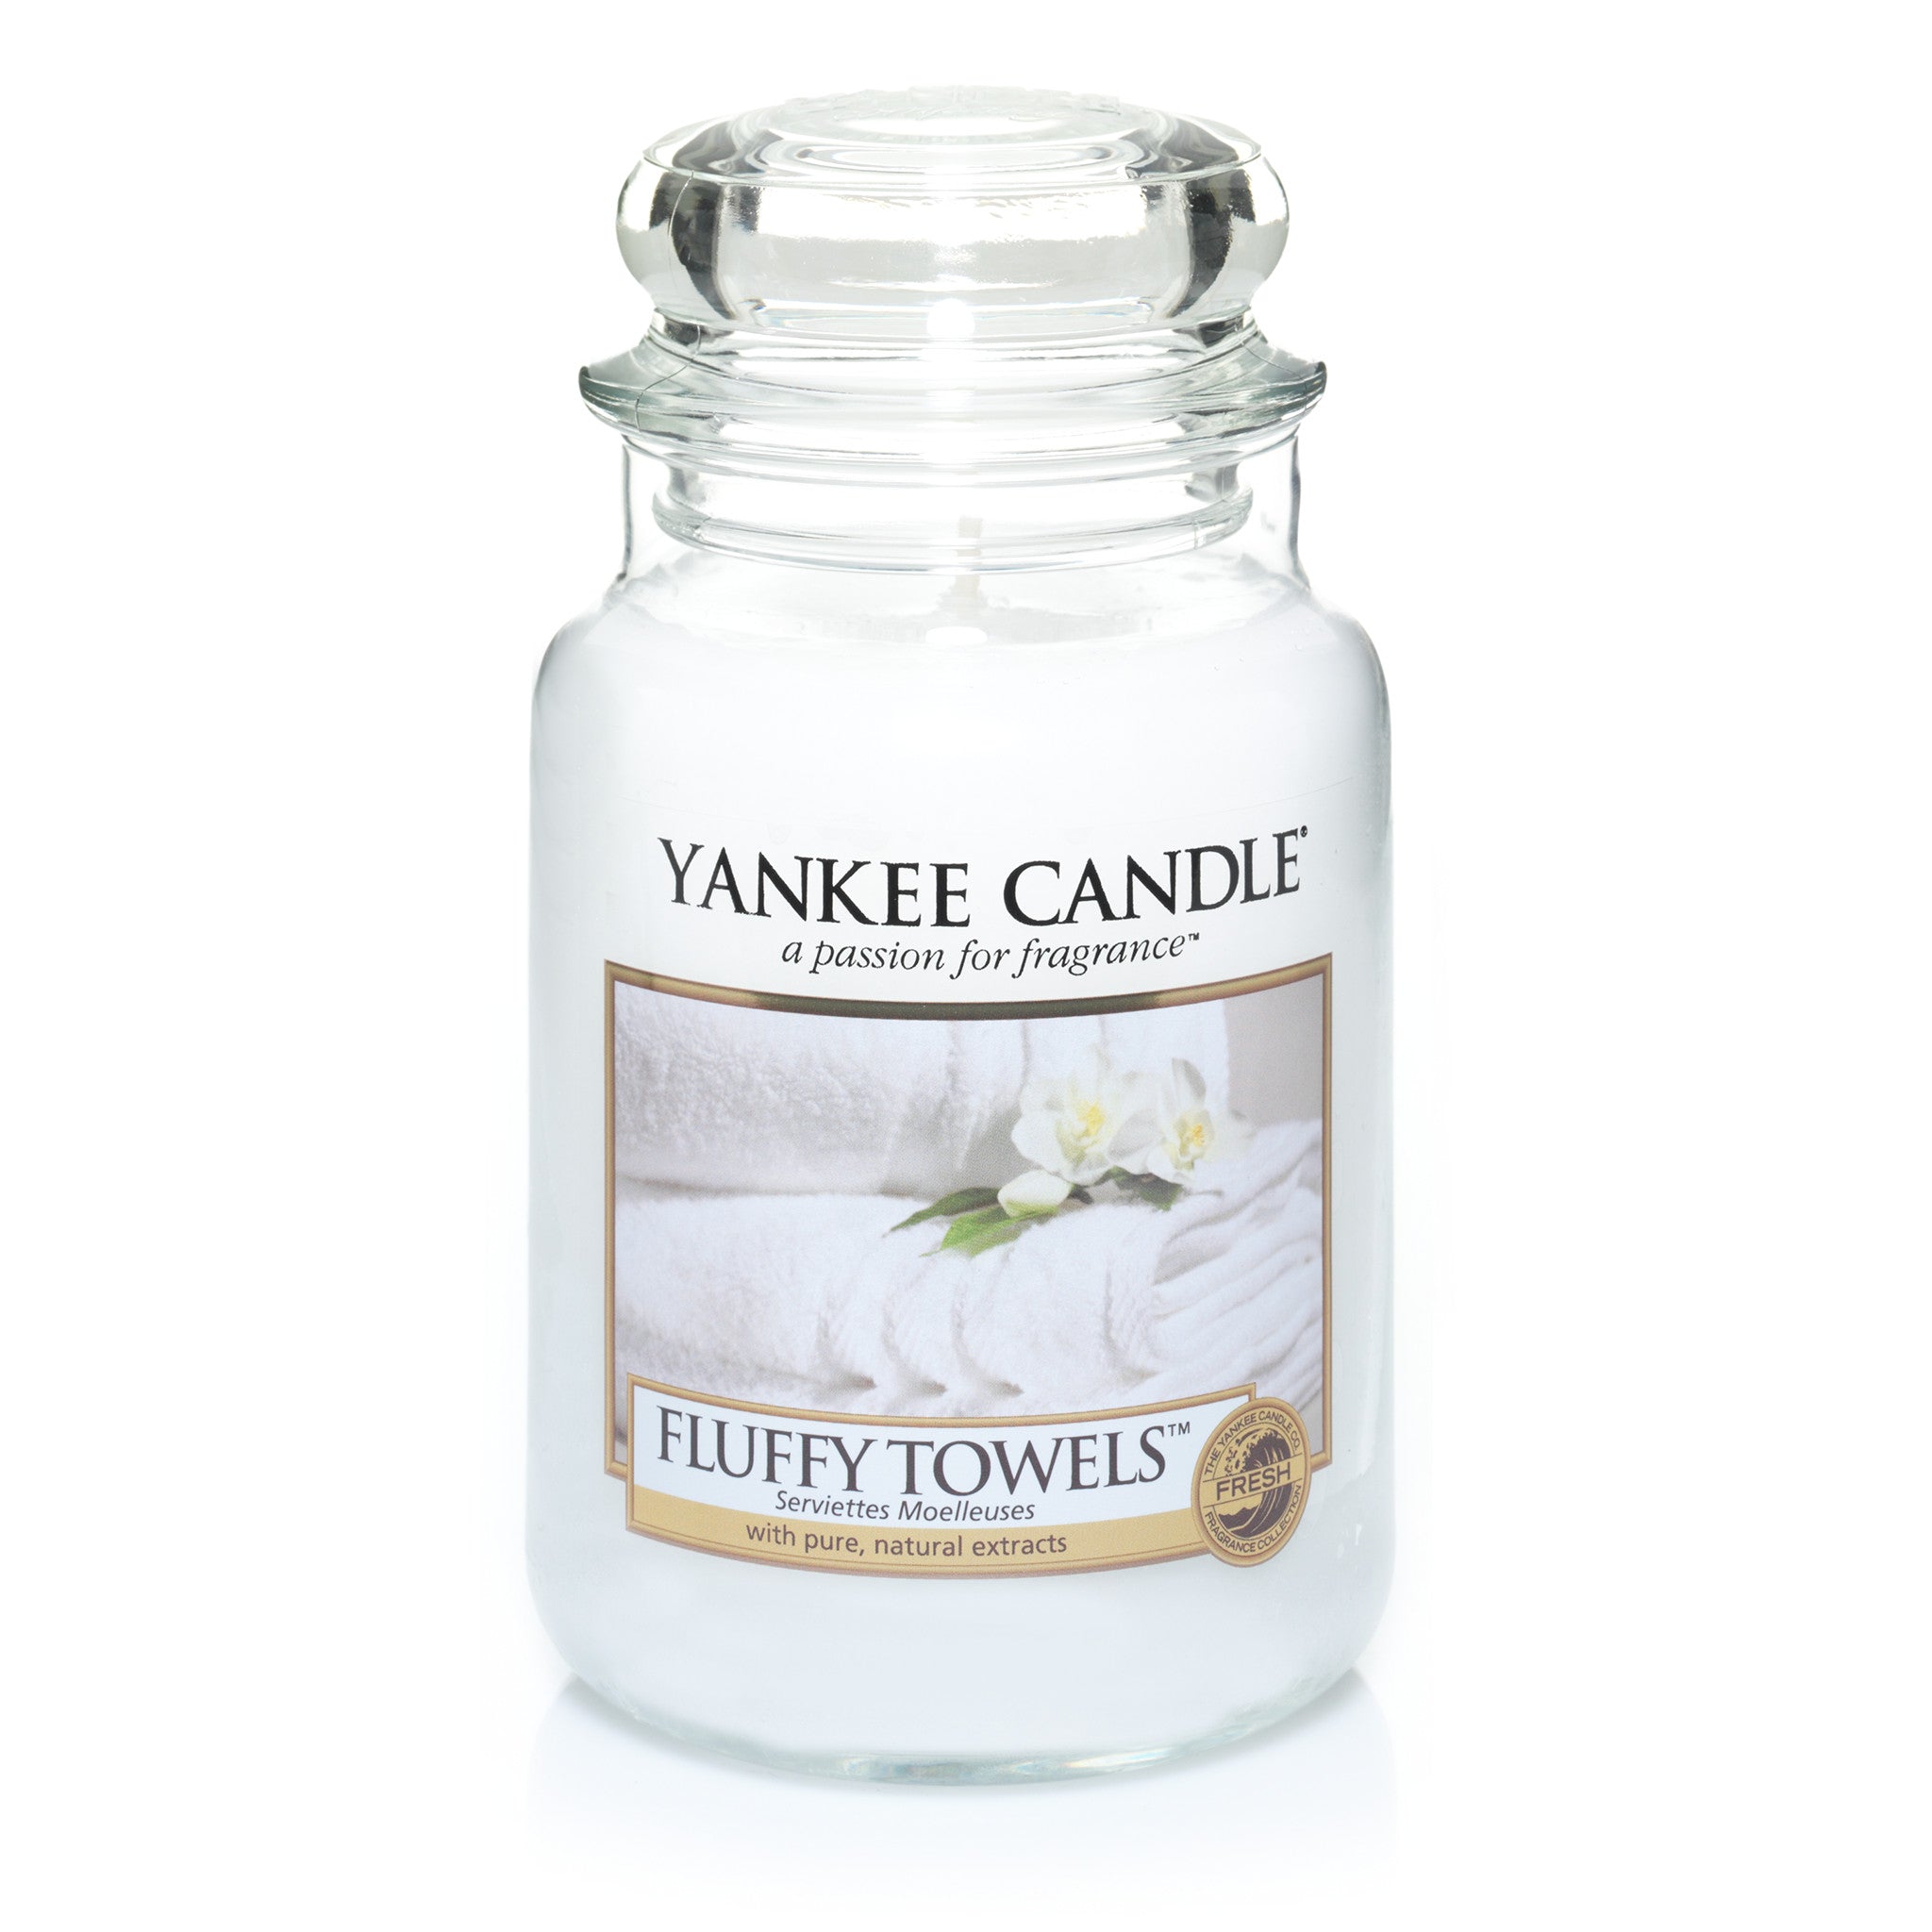 FLUFFY TOWELS -Yankee Candle- Giara Grande